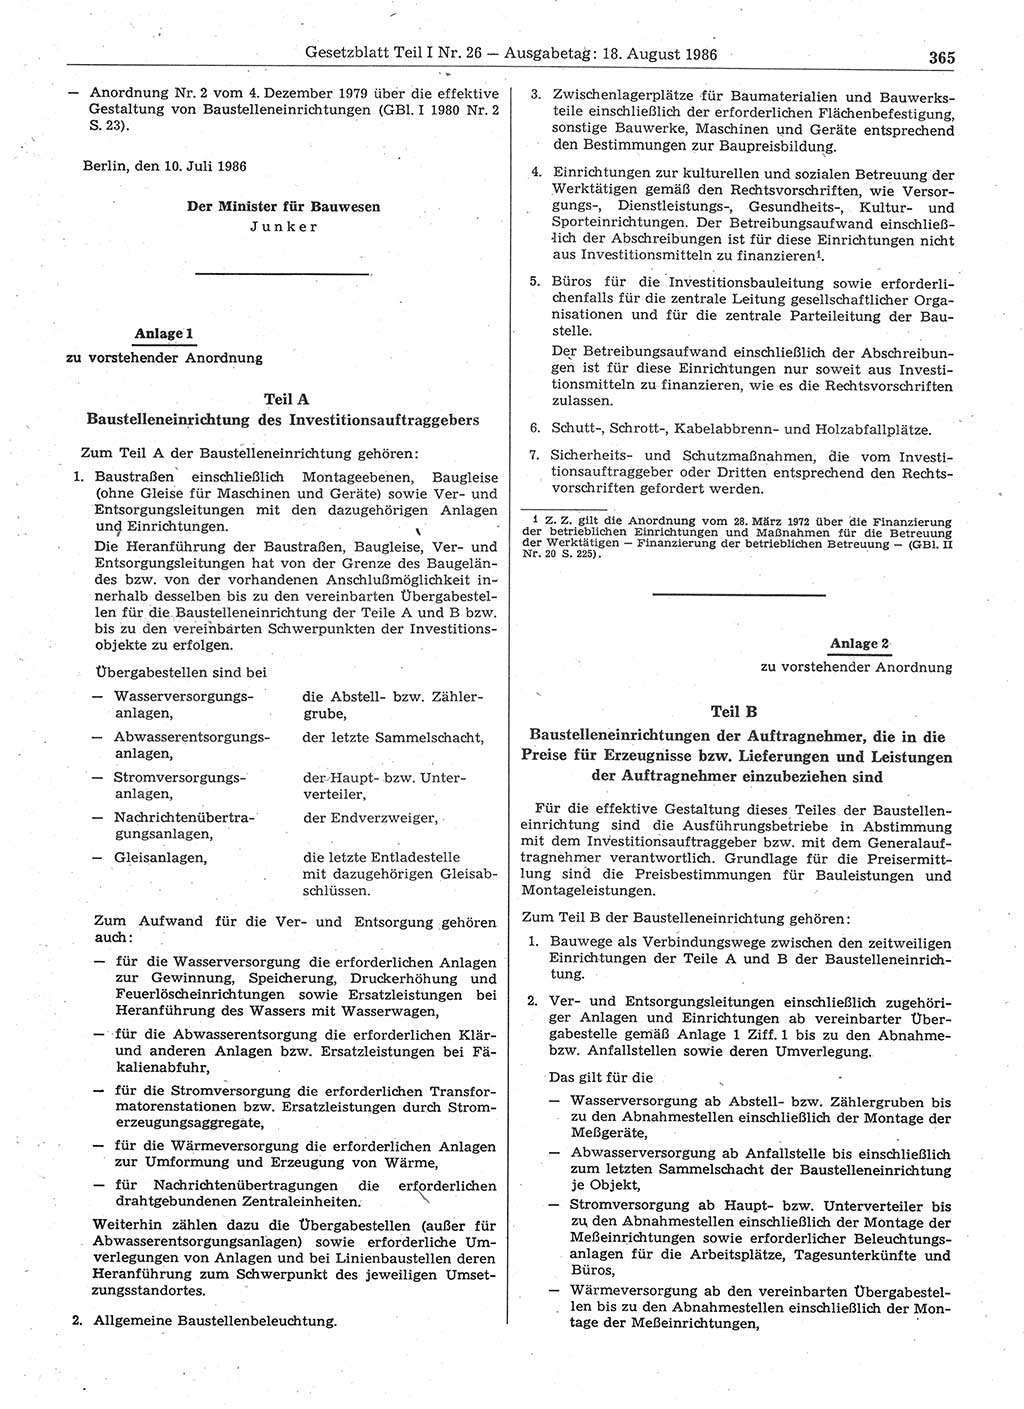 Gesetzblatt (GBl.) der Deutschen Demokratischen Republik (DDR) Teil Ⅰ 1986, Seite 365 (GBl. DDR Ⅰ 1986, S. 365)